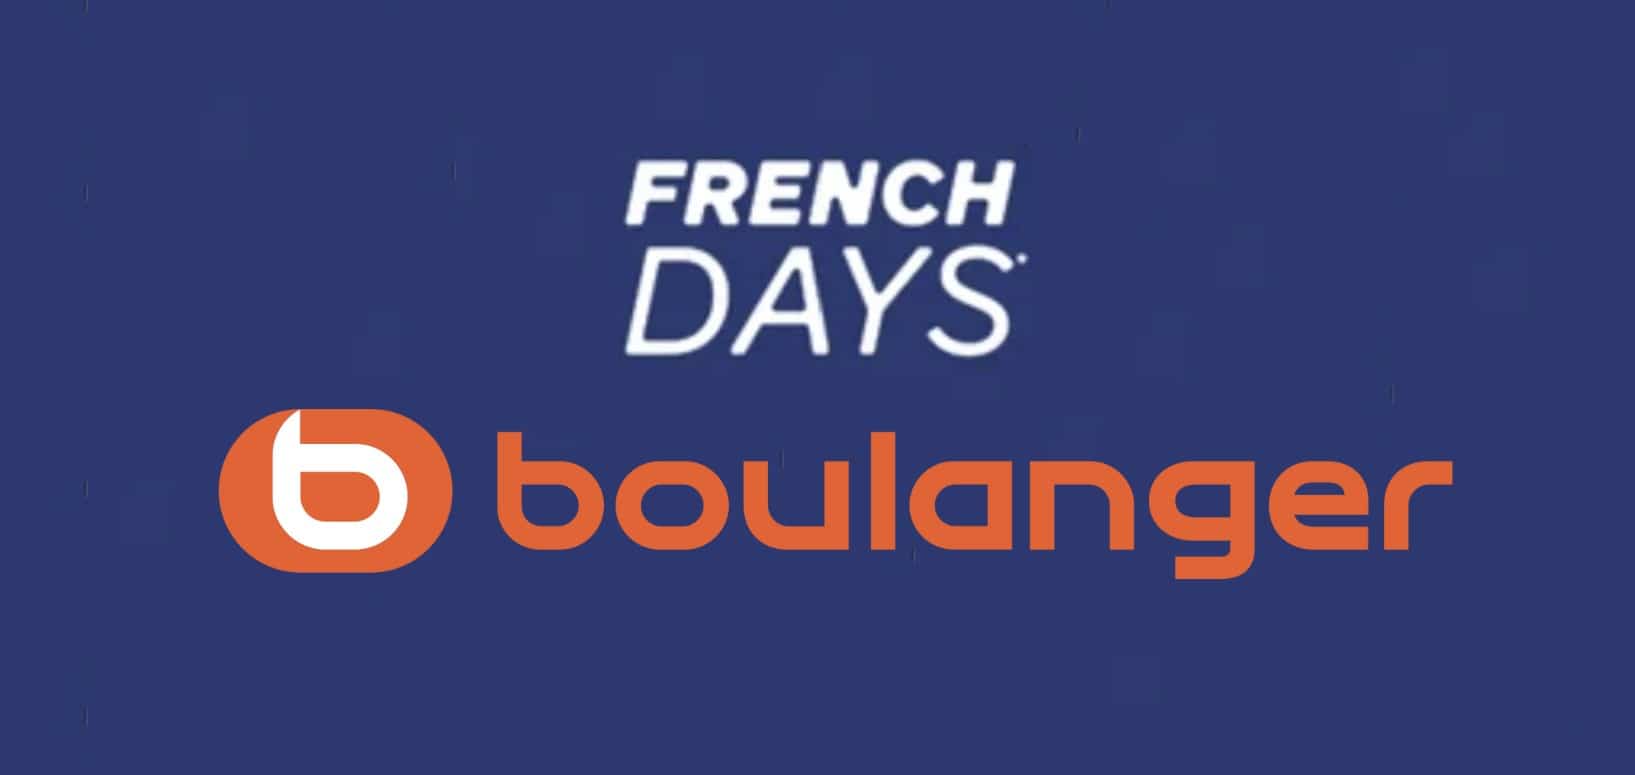 French Days Boulanger